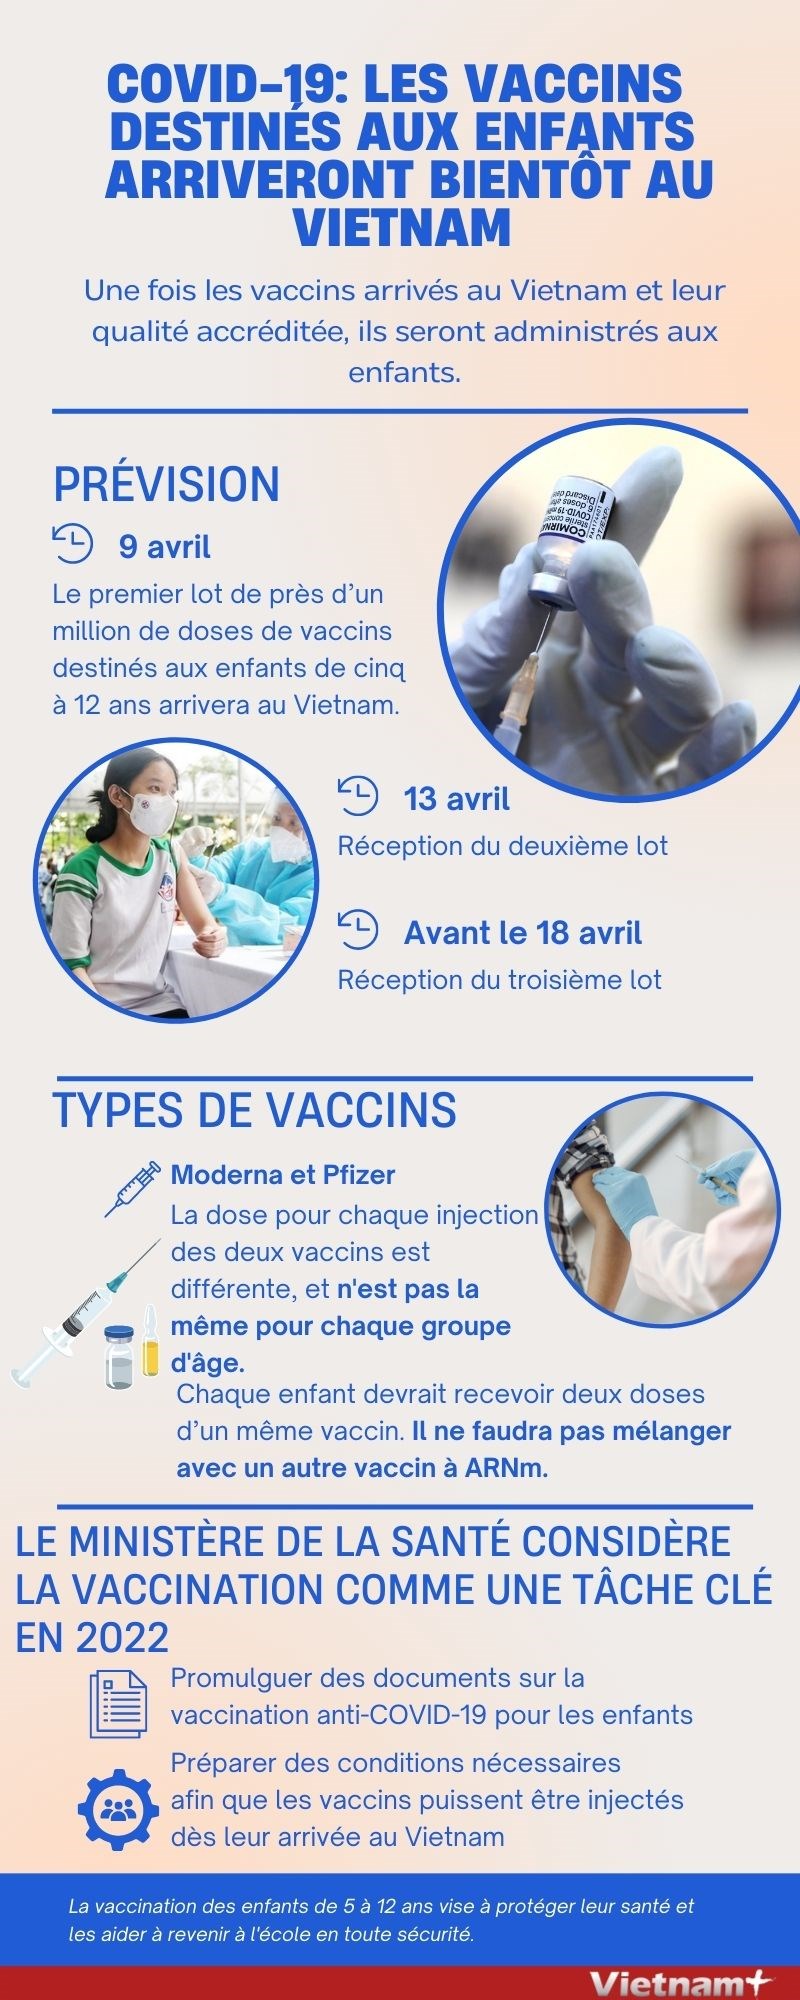 COVID-19: les vaccins destines aux enfants arriveront bientot au Vietnam hinh anh 1